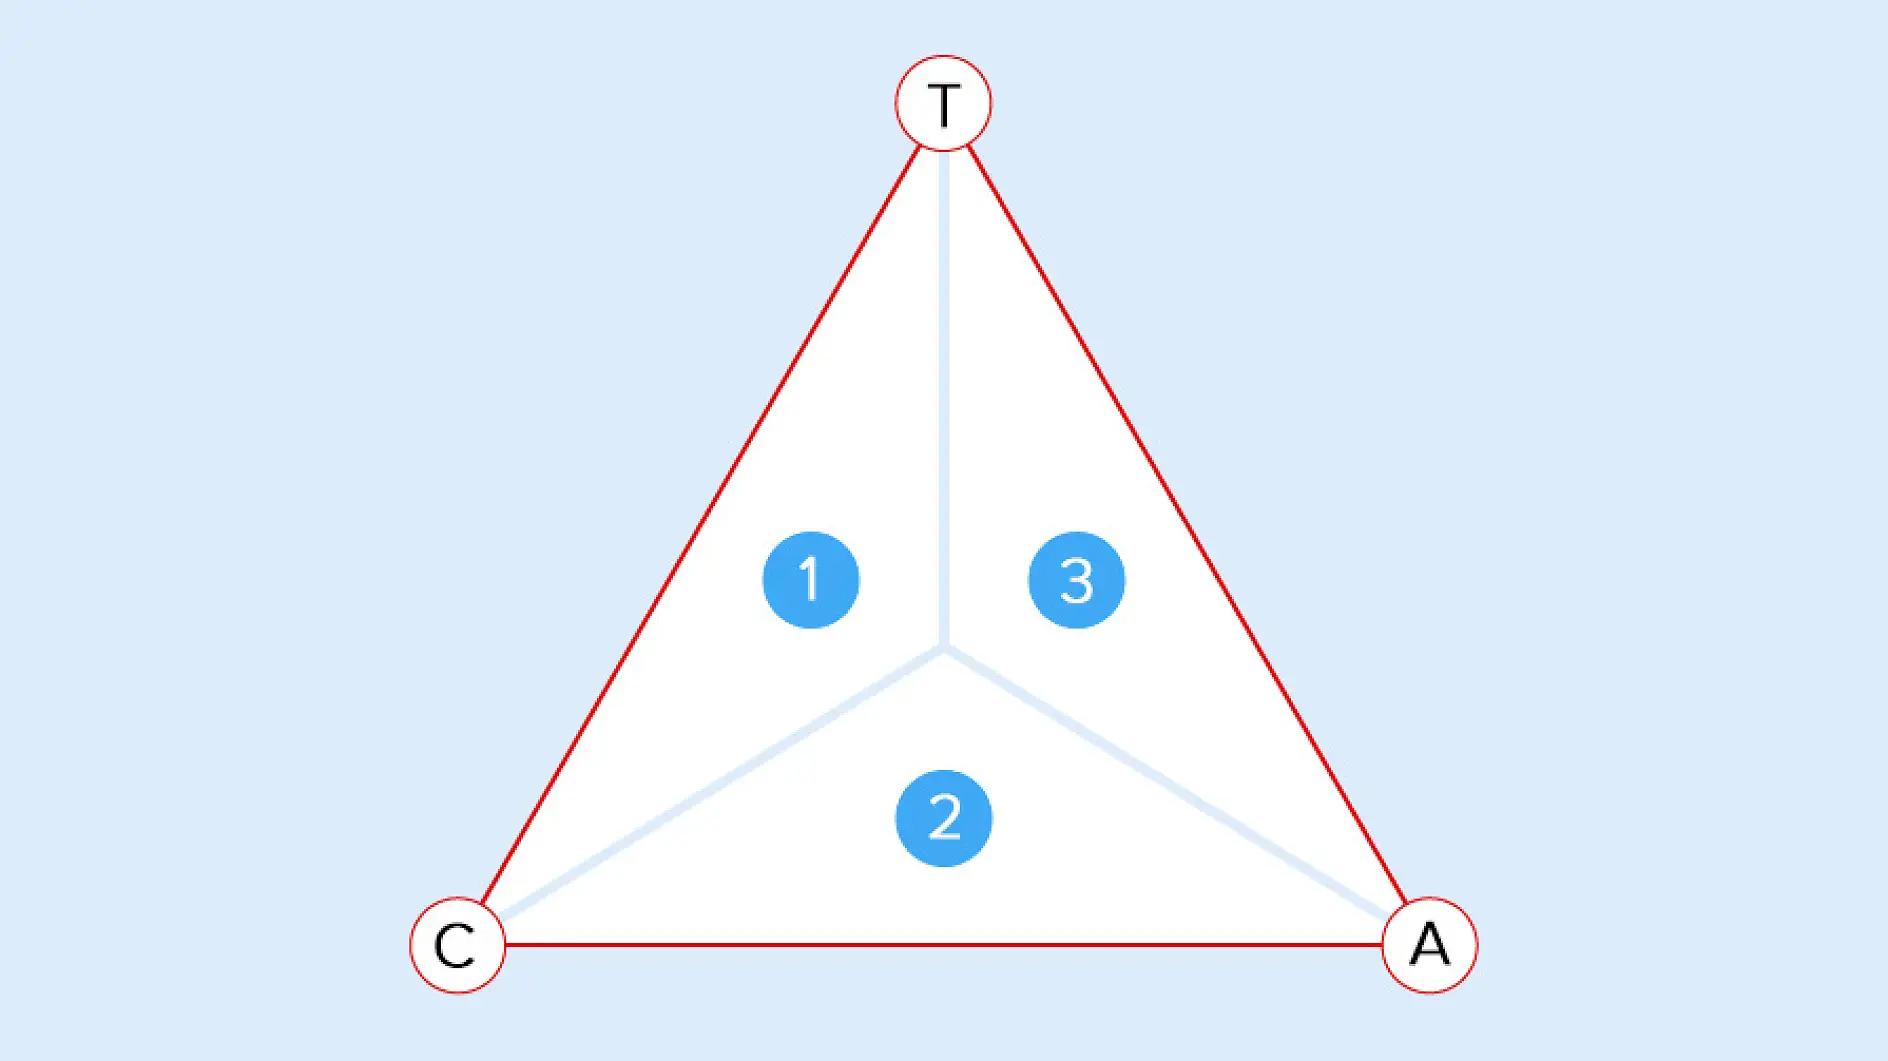 Η ισορροπία ανάμεσα σε Π) πρόσφυση, Σ) συνοχή και A) συνάφεια καθορίζει τον τομέα εφαρμογής: 1) Προσωρινή και αναστρέψιμη συγκόλληση, 2) Μόνιμη συγκόλληση, 3) Γρήγορη συγκόλληση (Quick Stick)